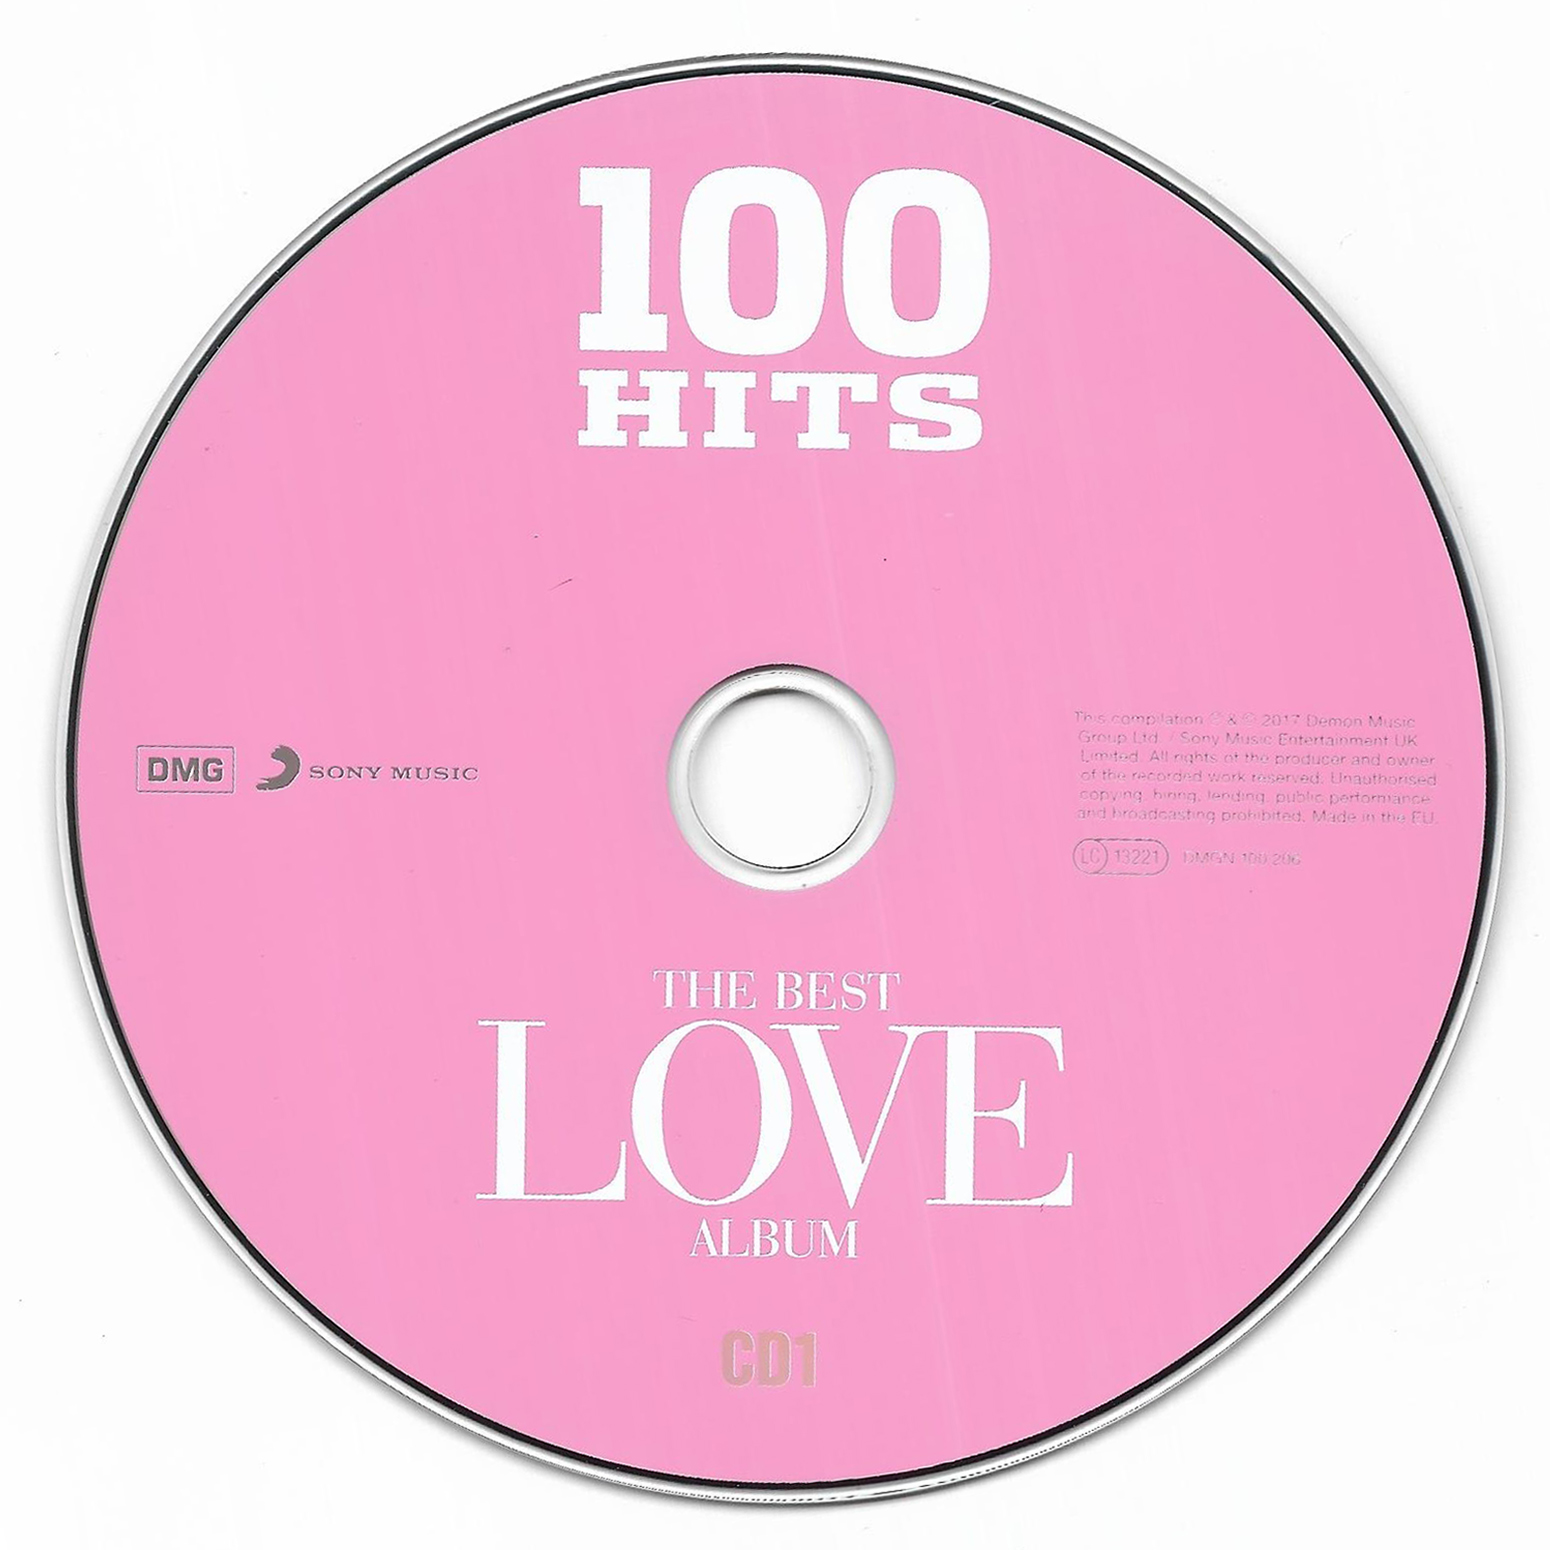 Love 100 Hits. Музыкальный альбом любовный. 100 Hits the best 70s album [5cd] (2018). Love Songs - 100 Hits. Cd romance